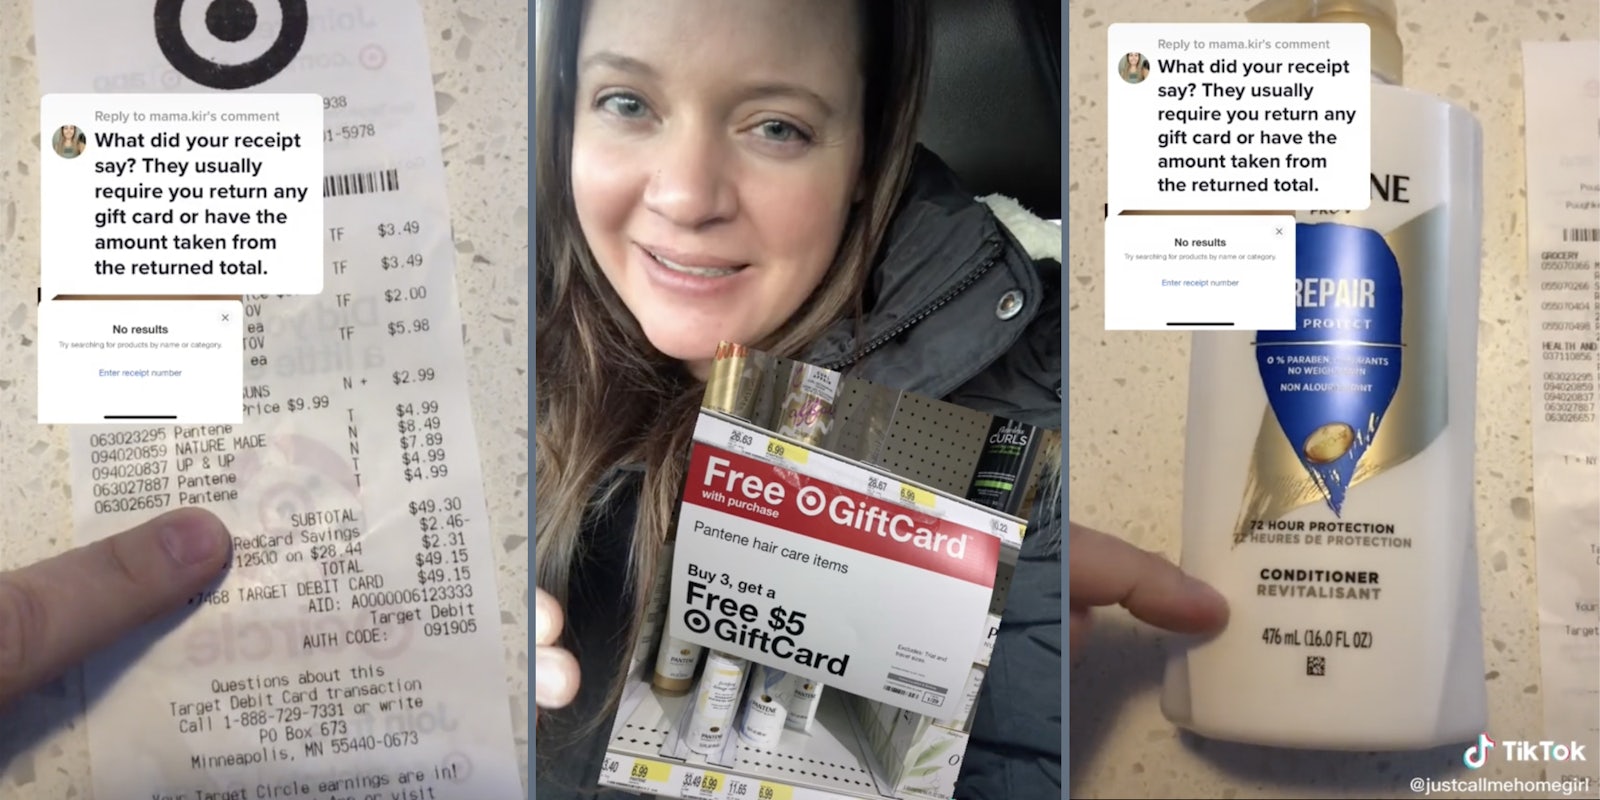 Target receipt (L), Woman showing a sale promotion at Target (M), Pantene bottle (R)